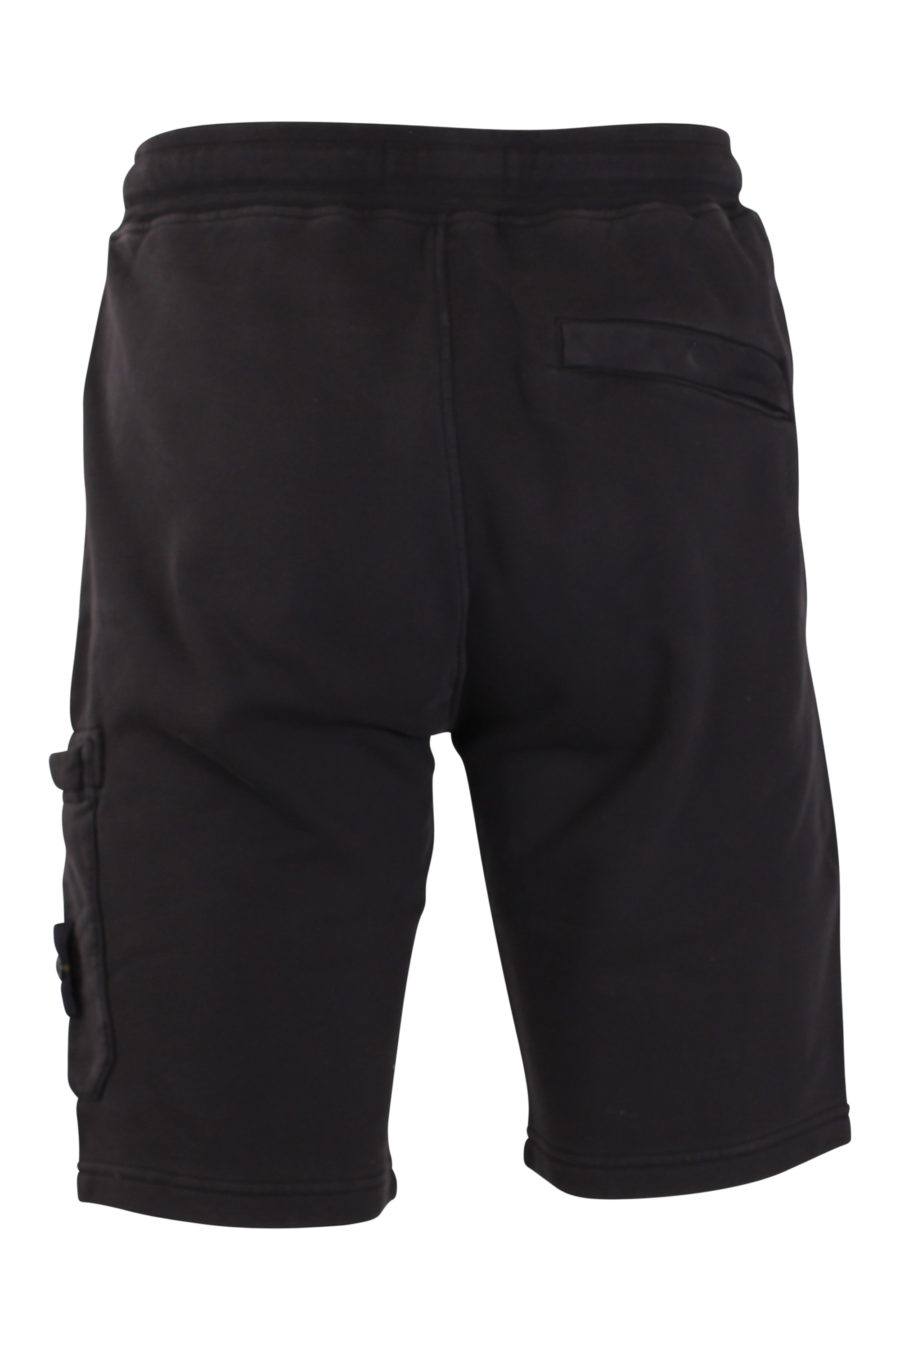 Pantalón corto de chándal negro - IMG 9426